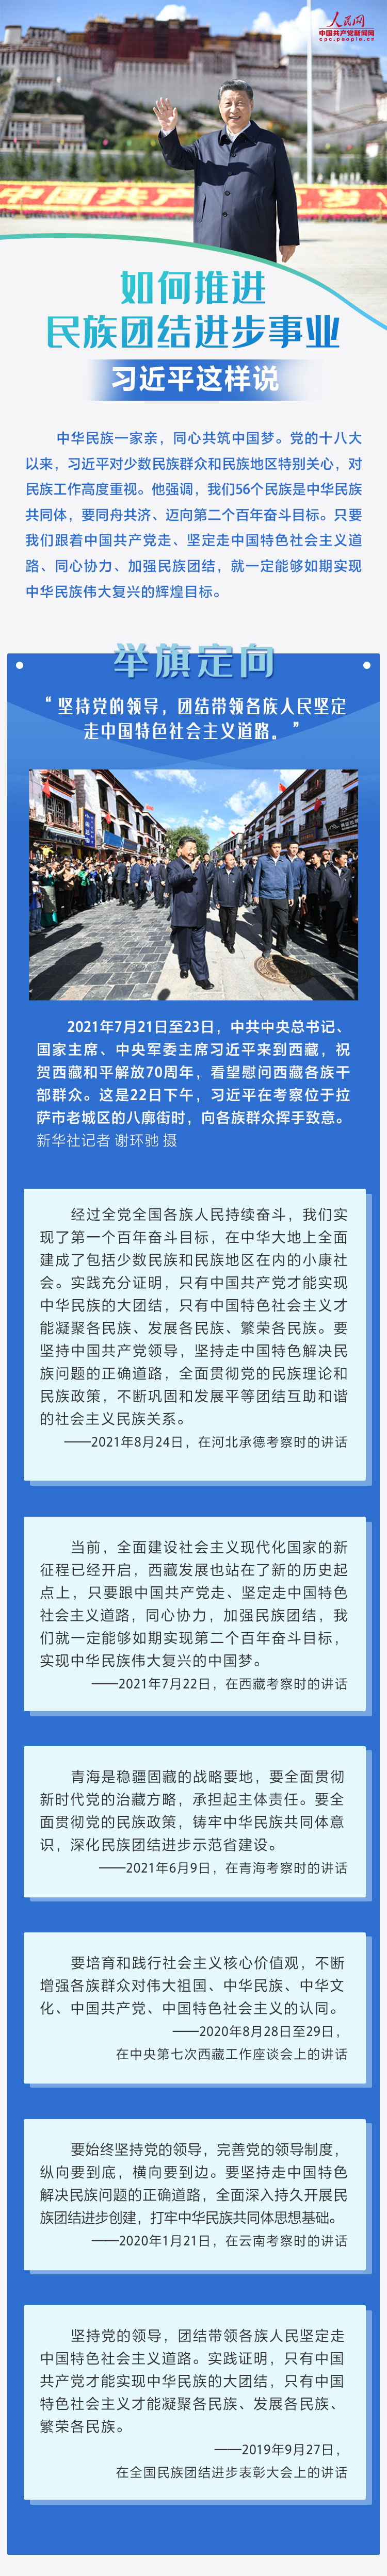 1如何推进民族团结进步事业，习近平这样说 人民网-中国共产党新闻网.jpg